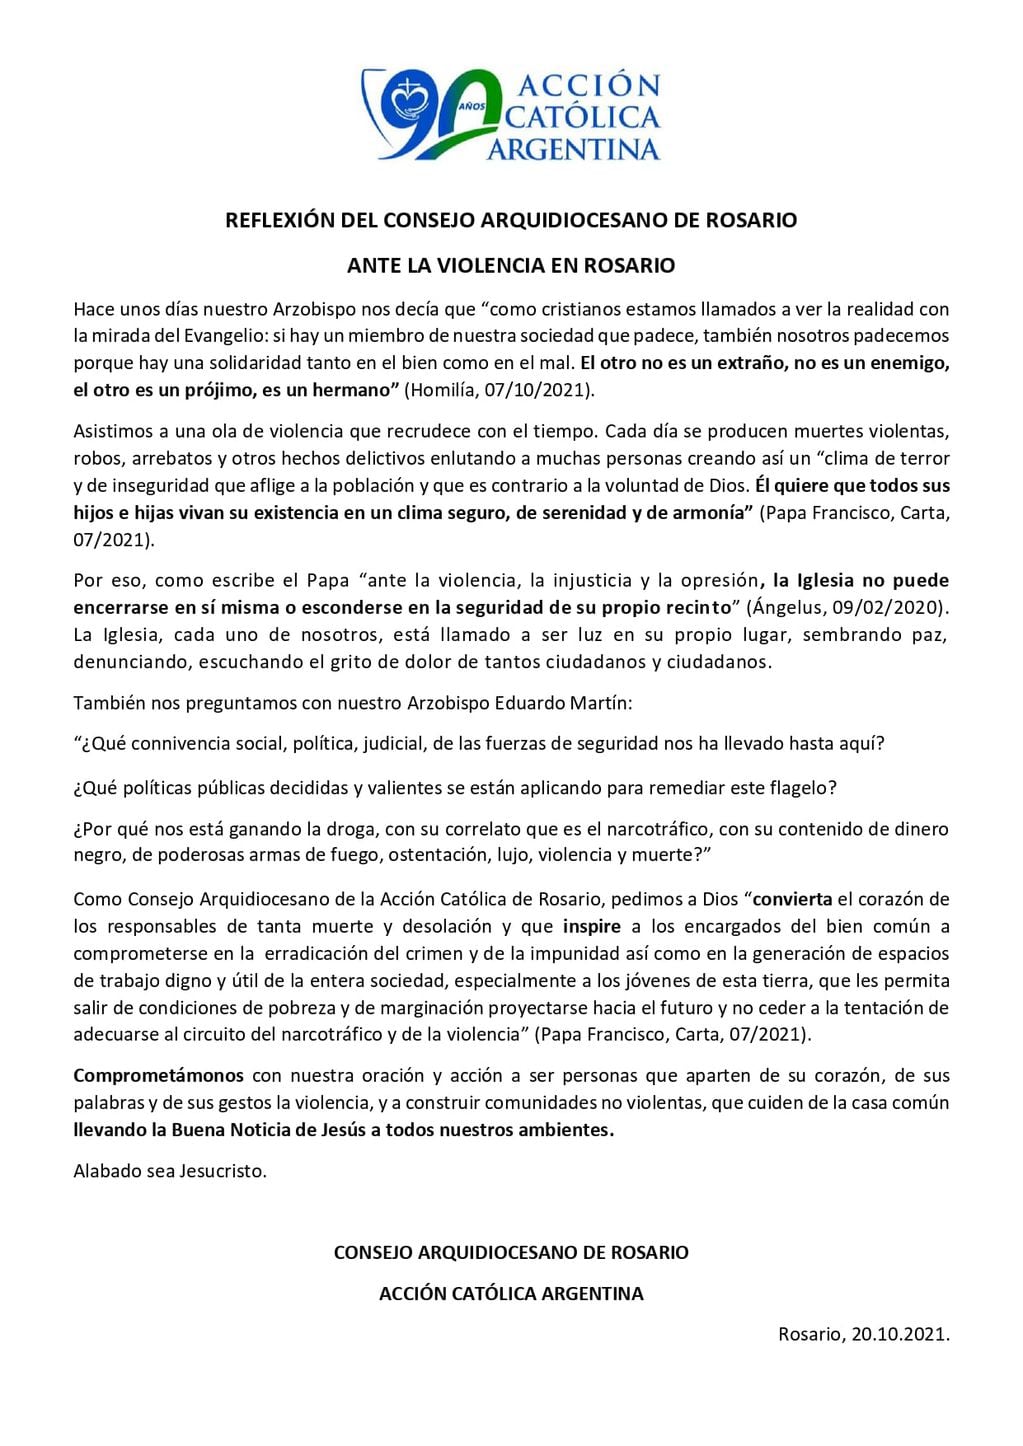 El comunicado de Acción Católica Argentina se dio a conocer dos días después de un encuentro por la paz en Rosario.